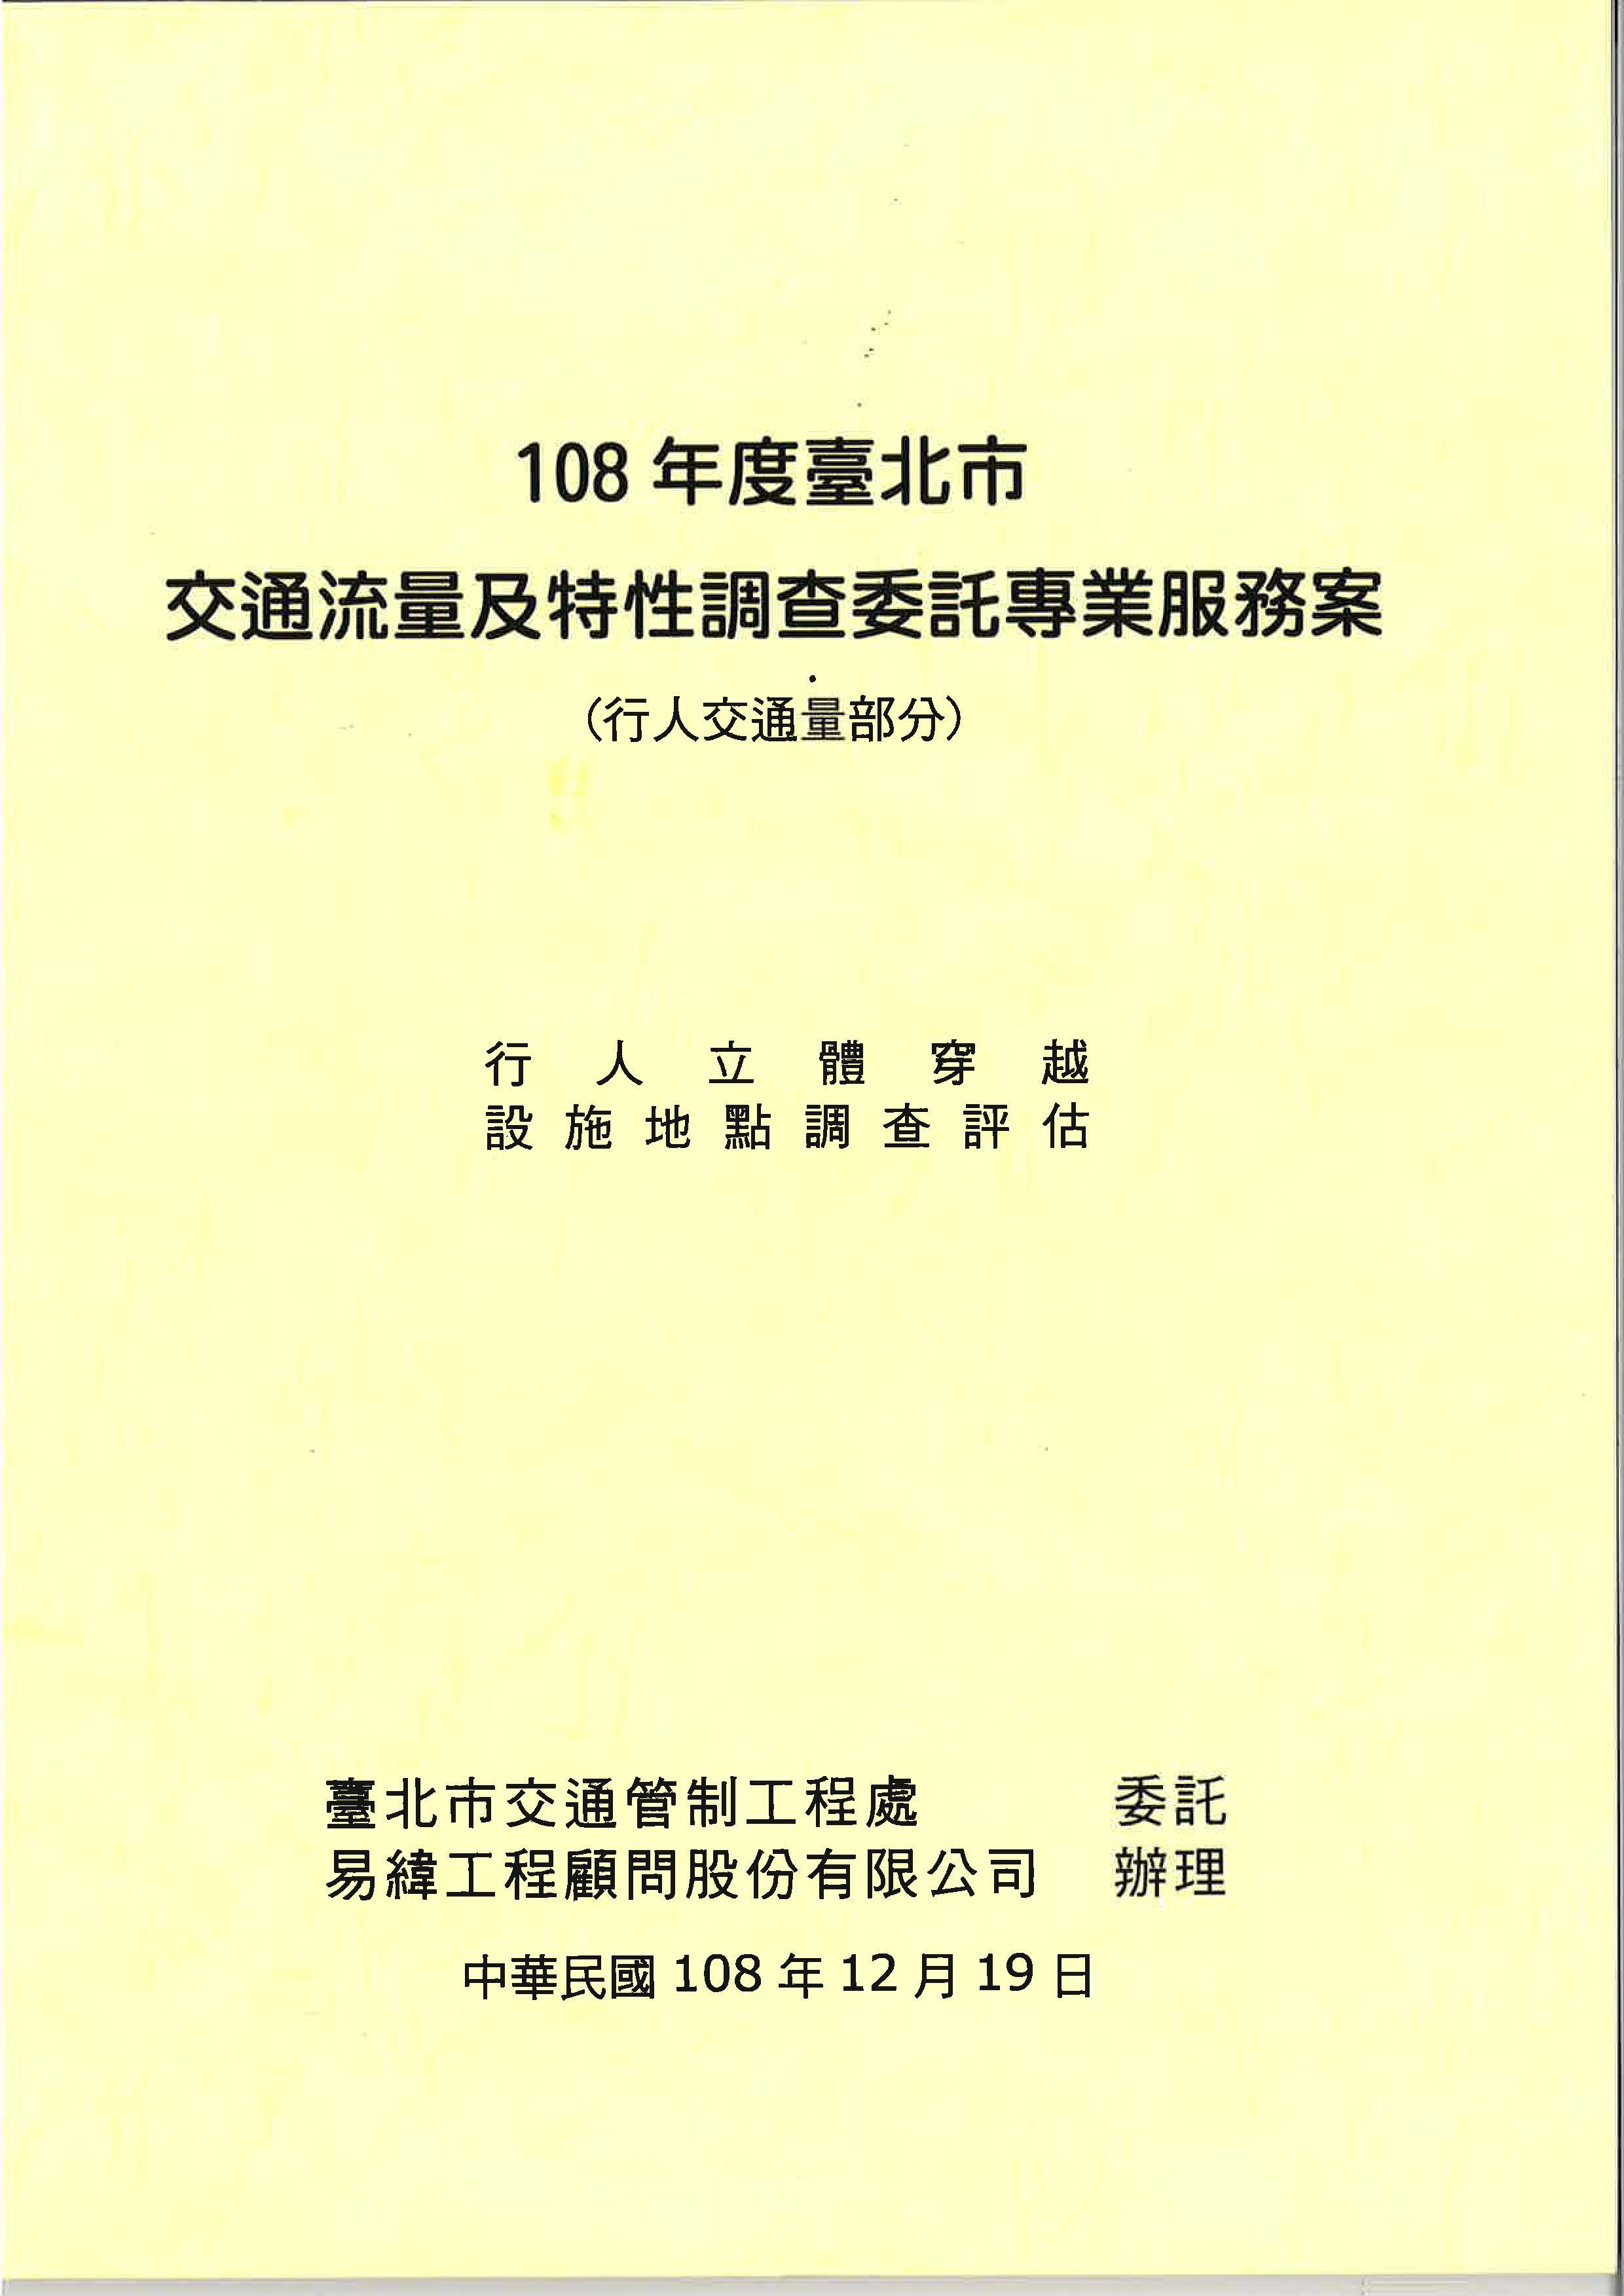 108年度臺北市交通流量及特性調查委託專業服務案 (行人交通量部分)